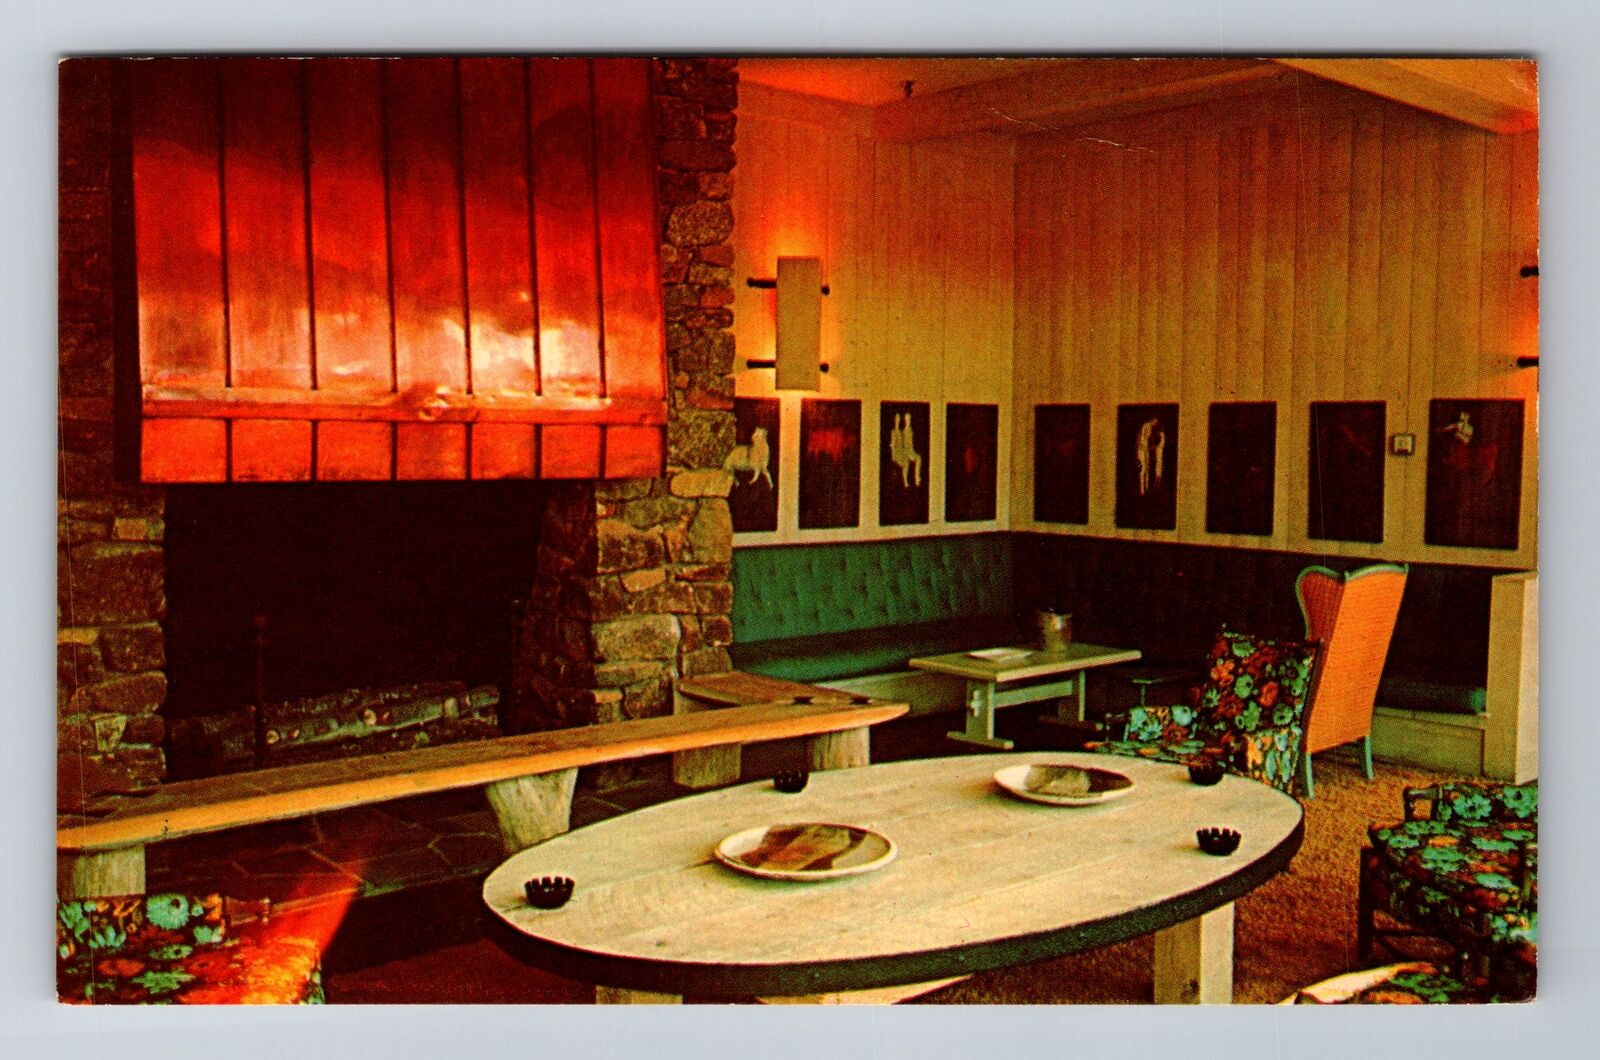 Bedford VA-Virginia, Peaks Of Otter Restaurant & Lodge, Vintage Postcard